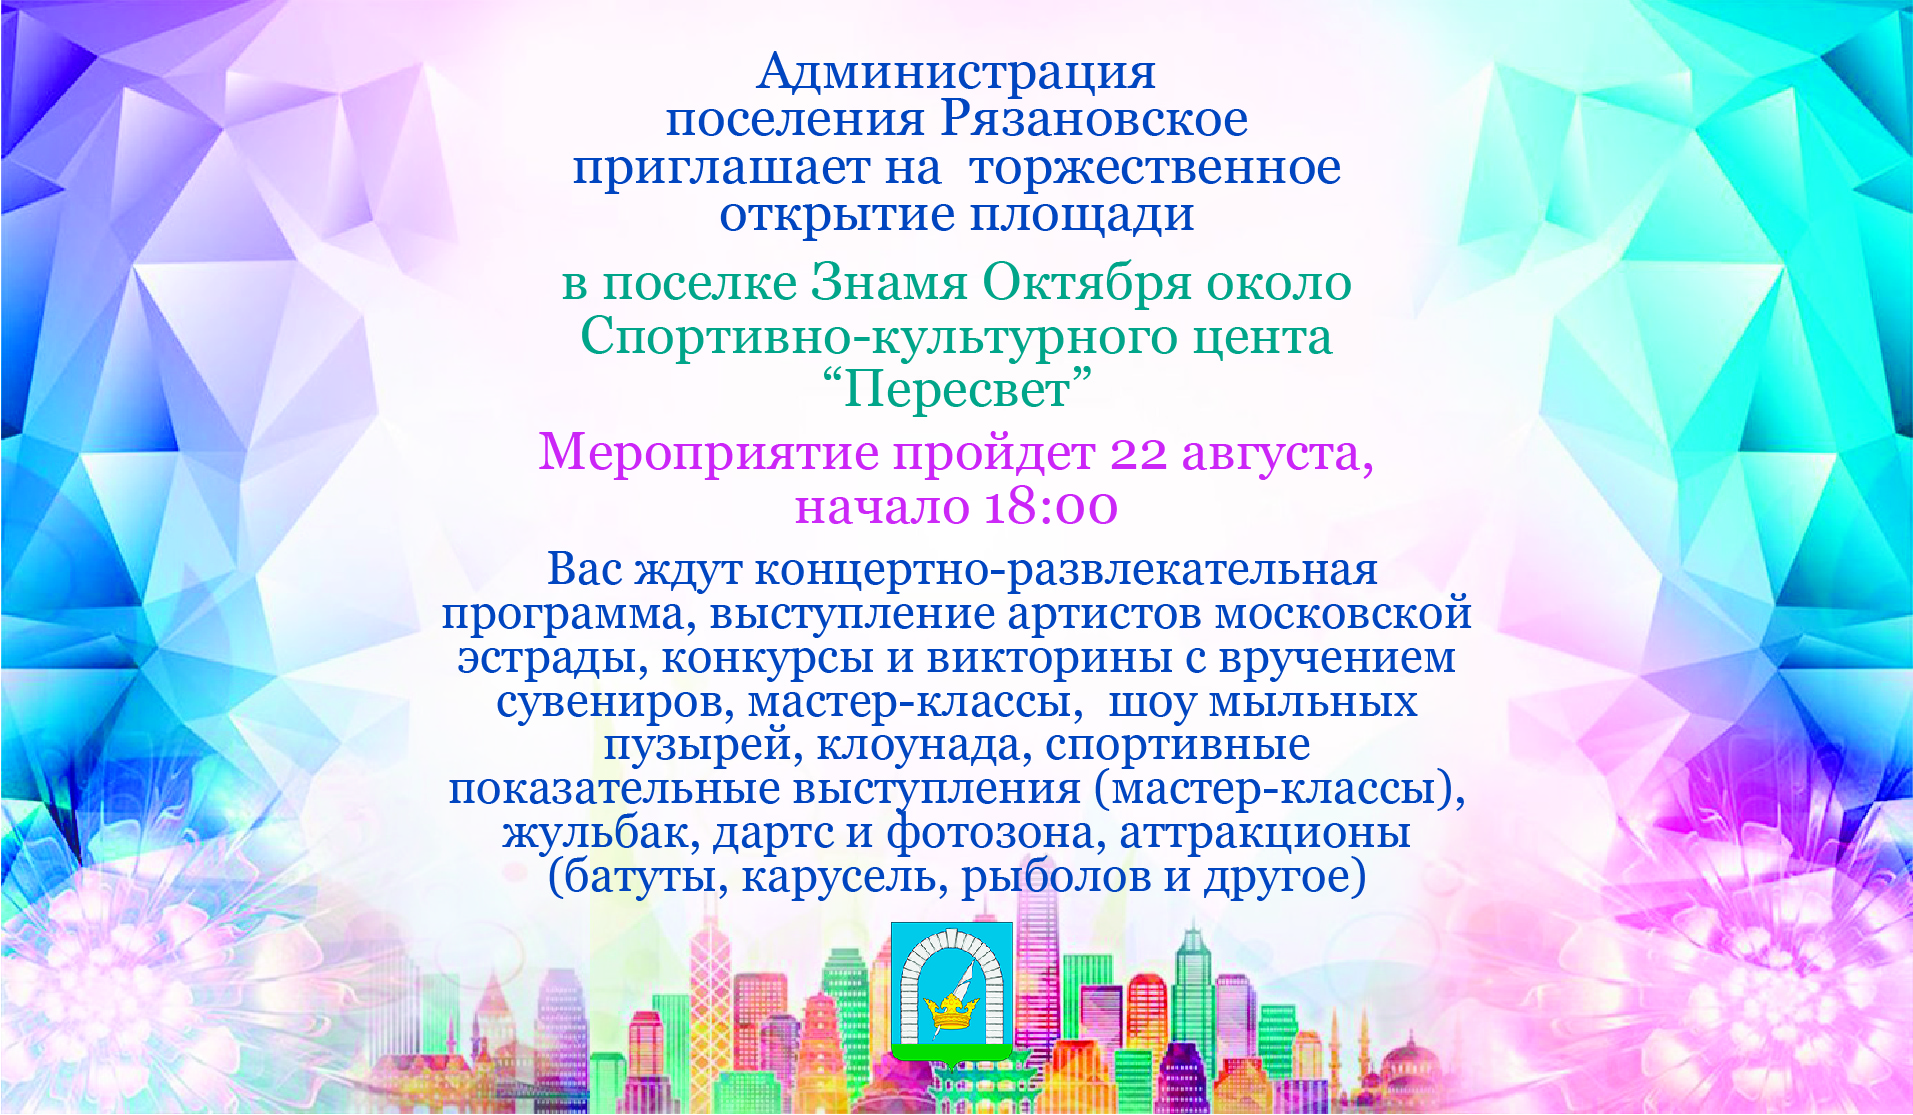 22 августа в 18:00 администрация поселения Рязановское приглашает жителей на торжественное открытие площади возле Спортивно-культурного центра «Пересвет»